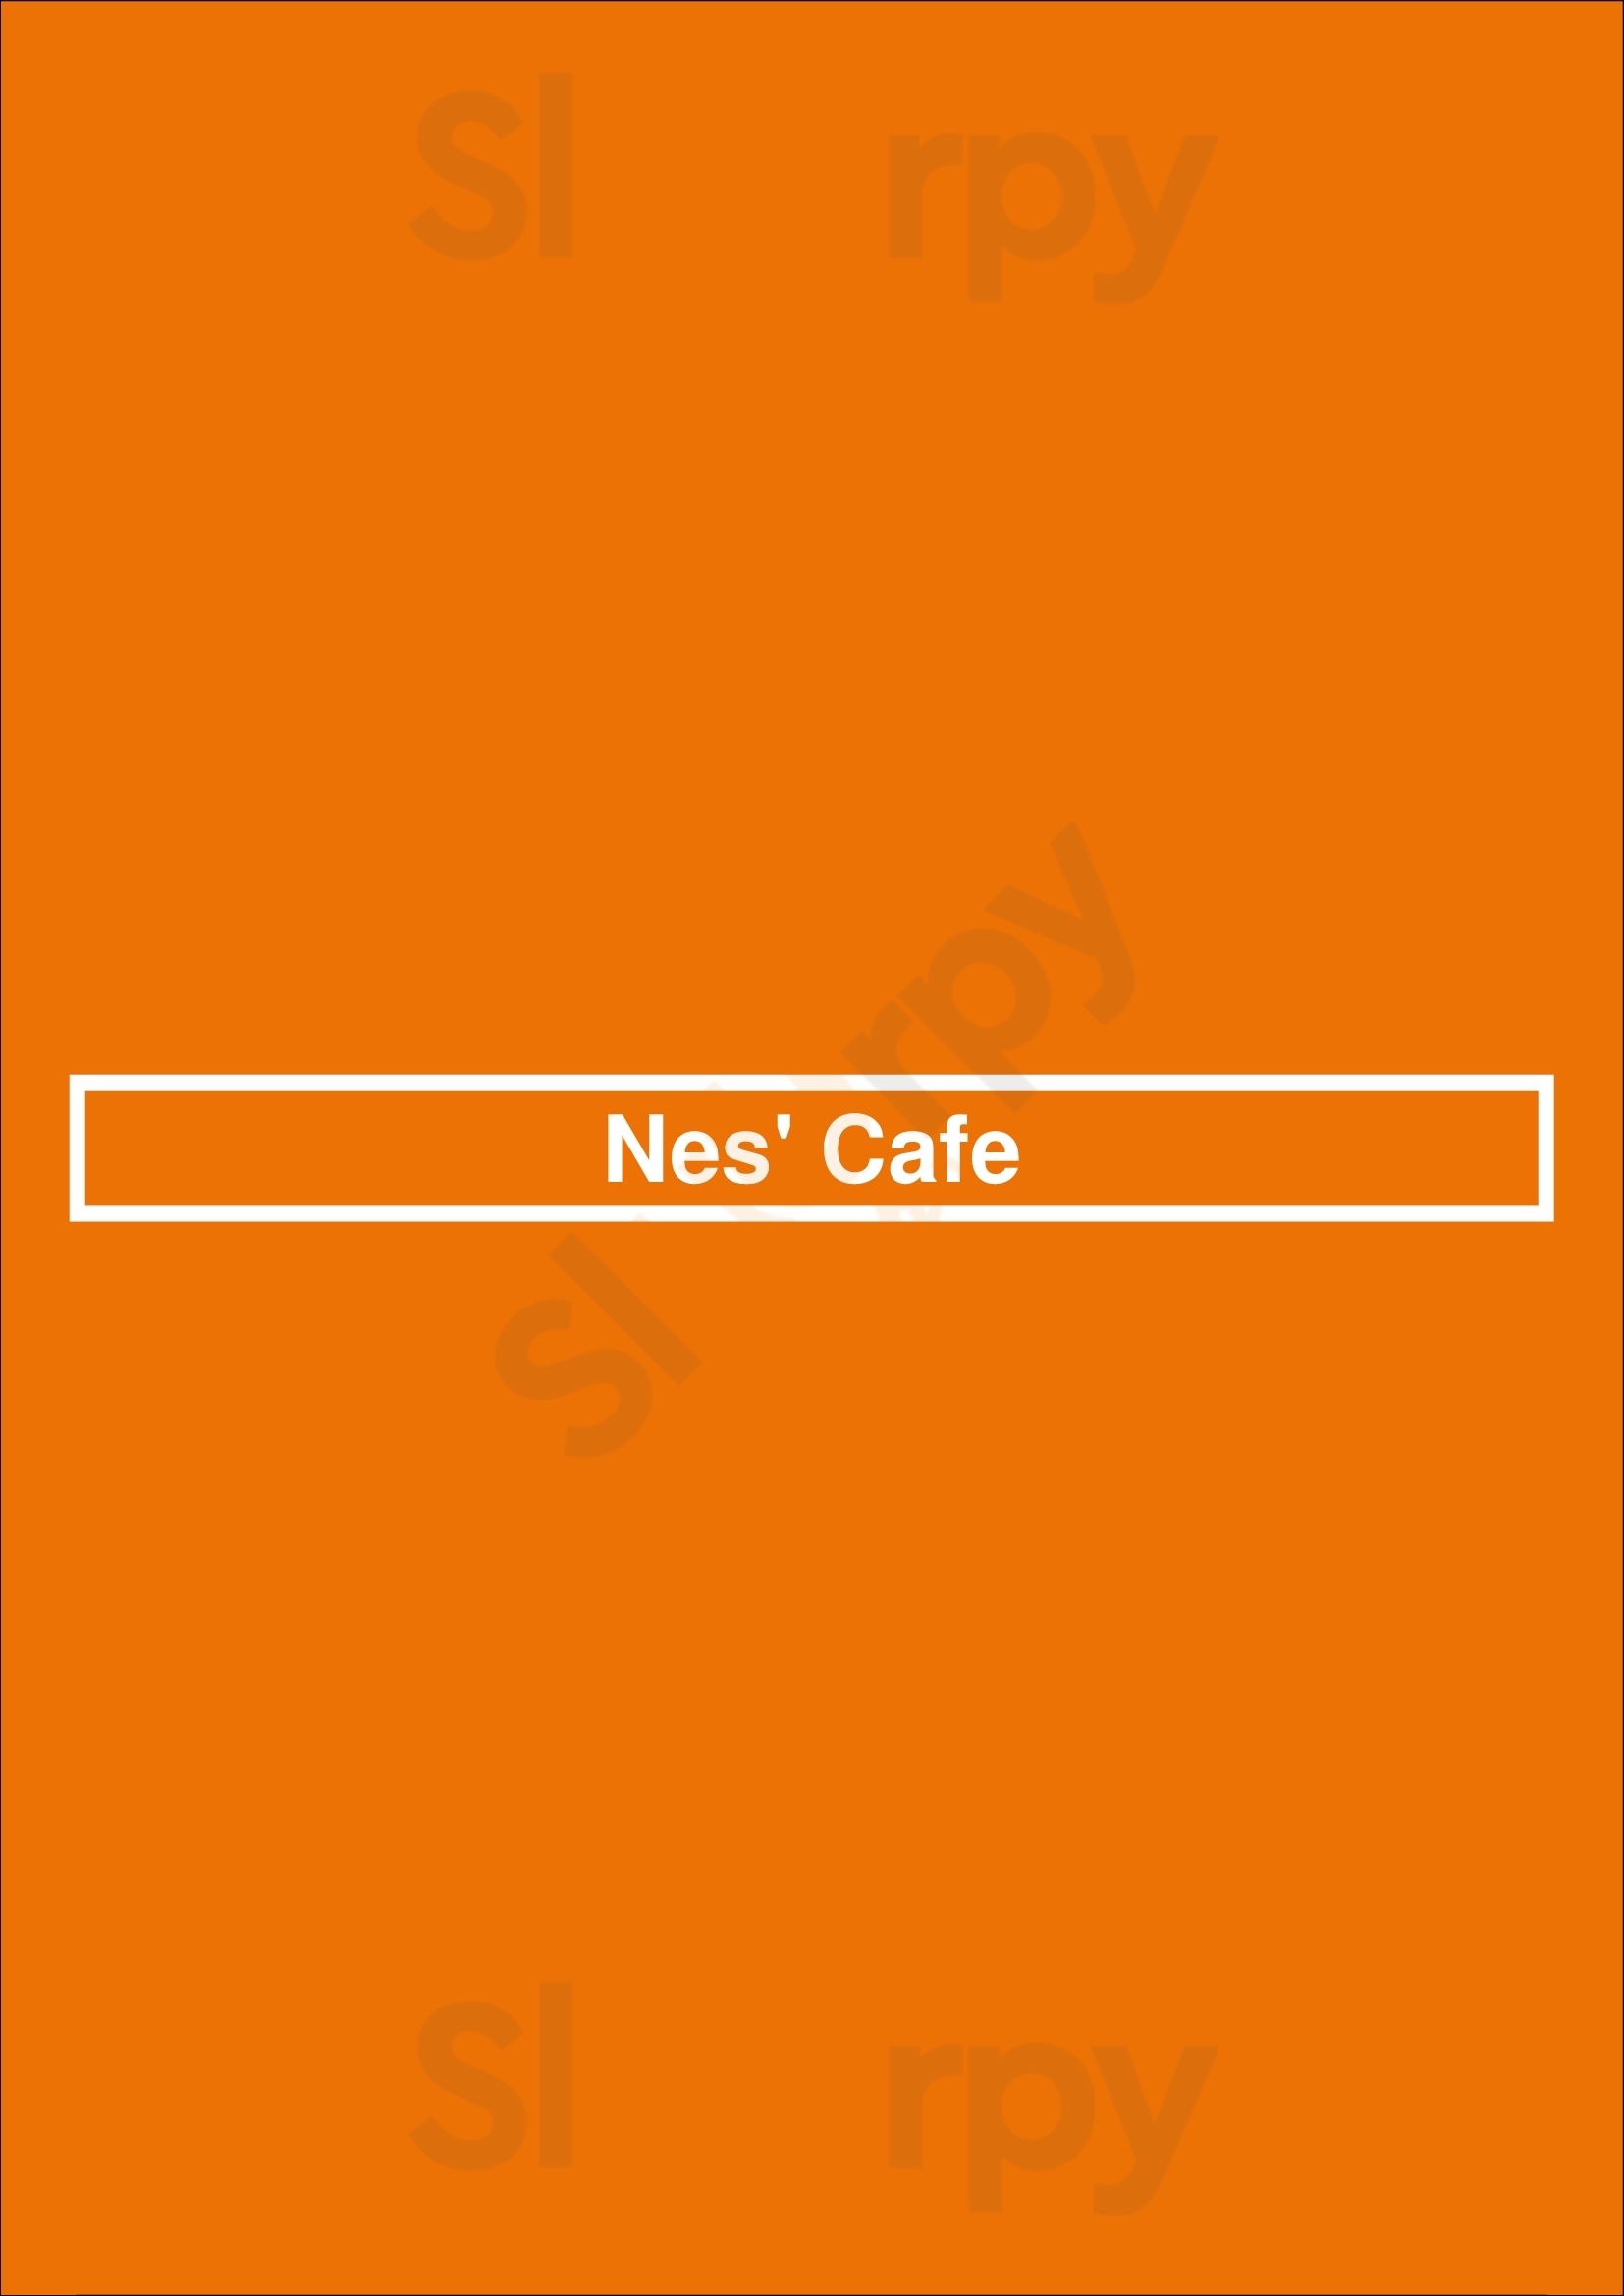 Nes' Cafe Hornchurch Menu - 1